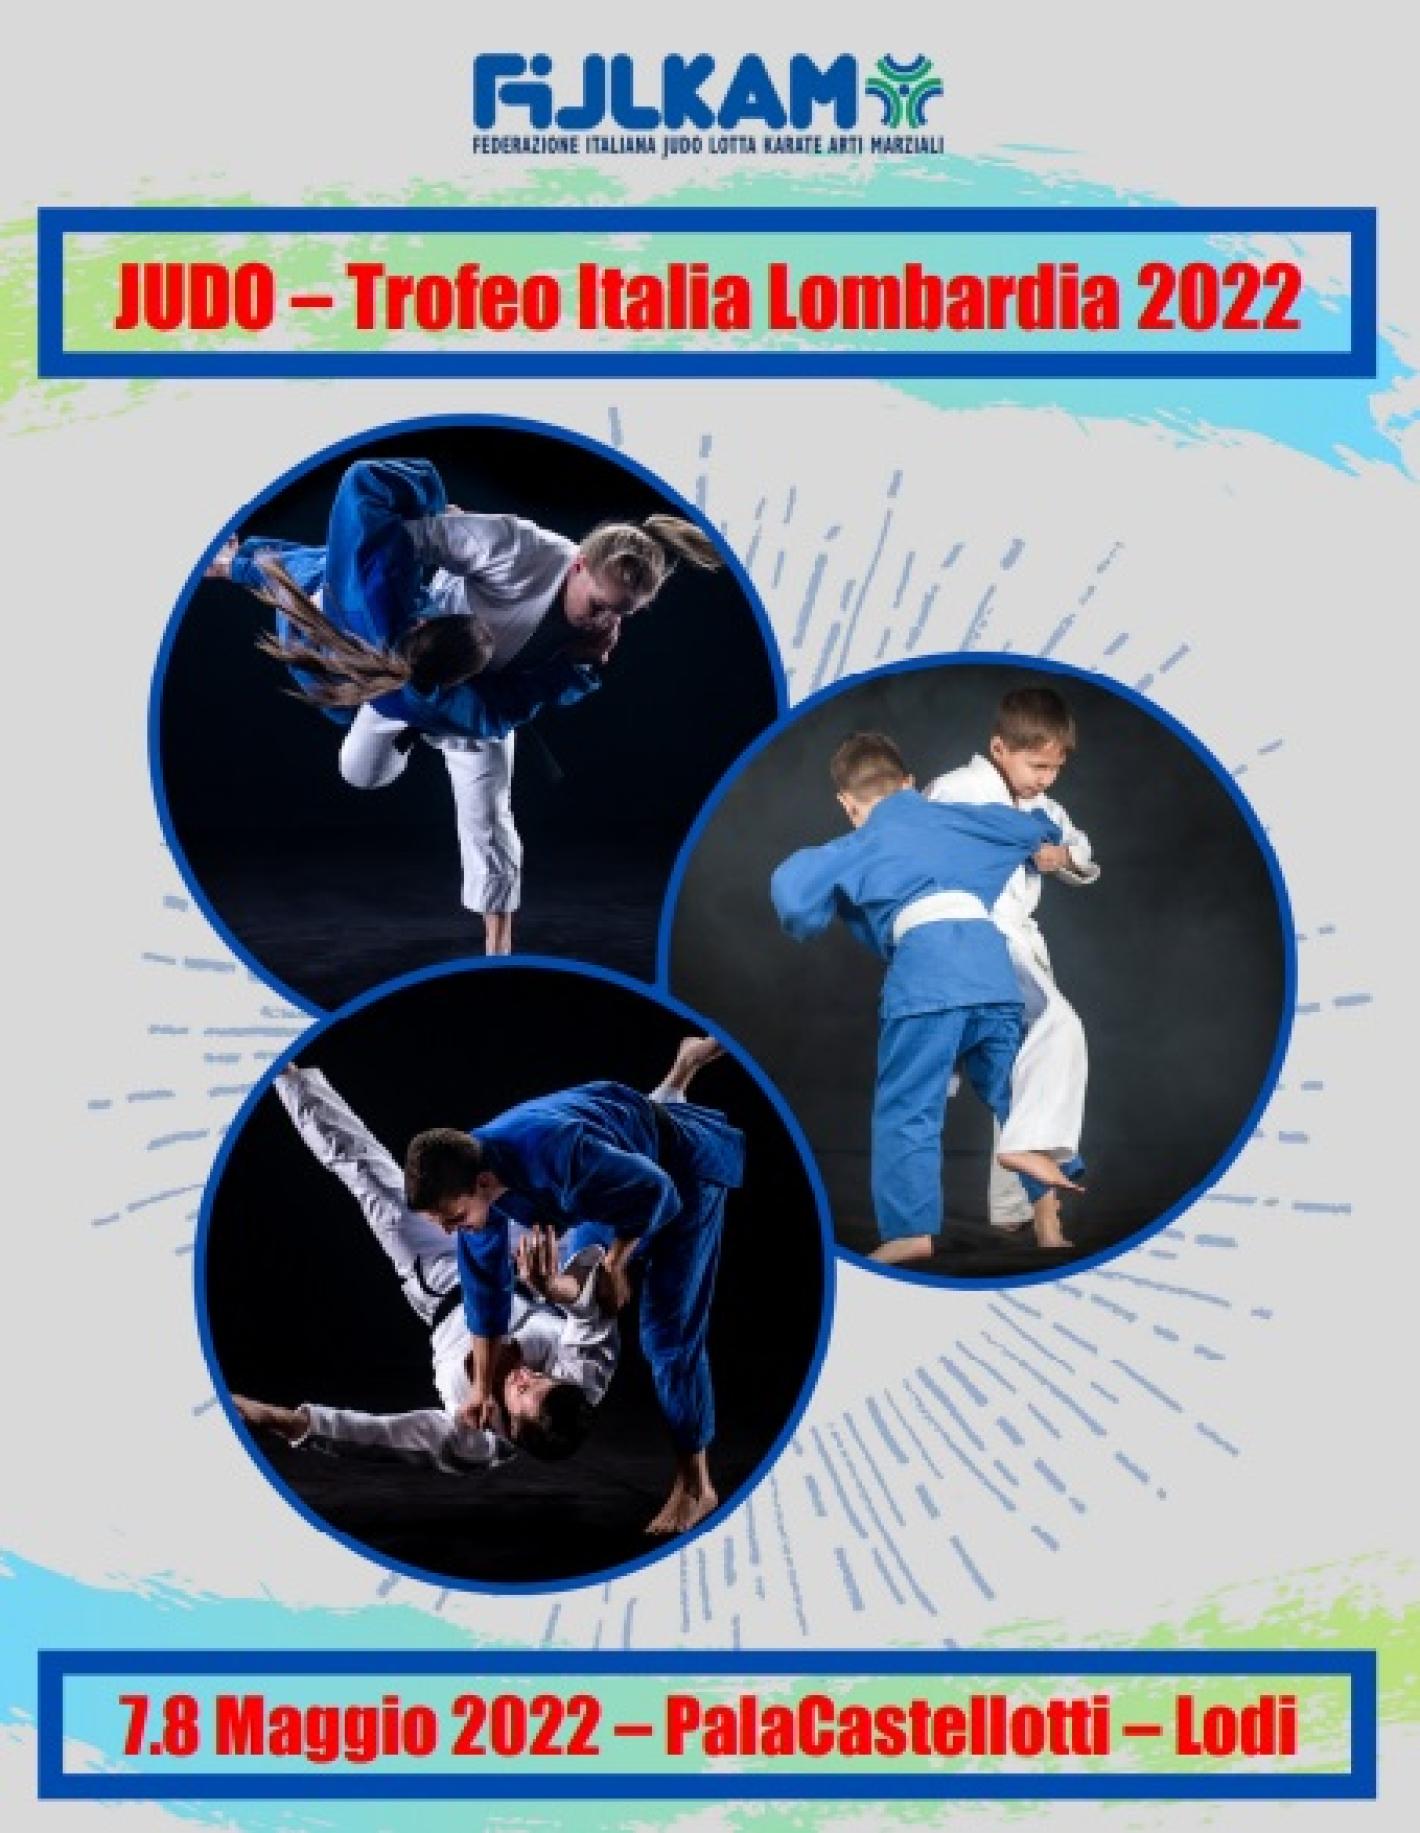 images/sardegna/Settore_Judo/2022/20220507_Trofeo_Italia/medium/Immagine.jpg